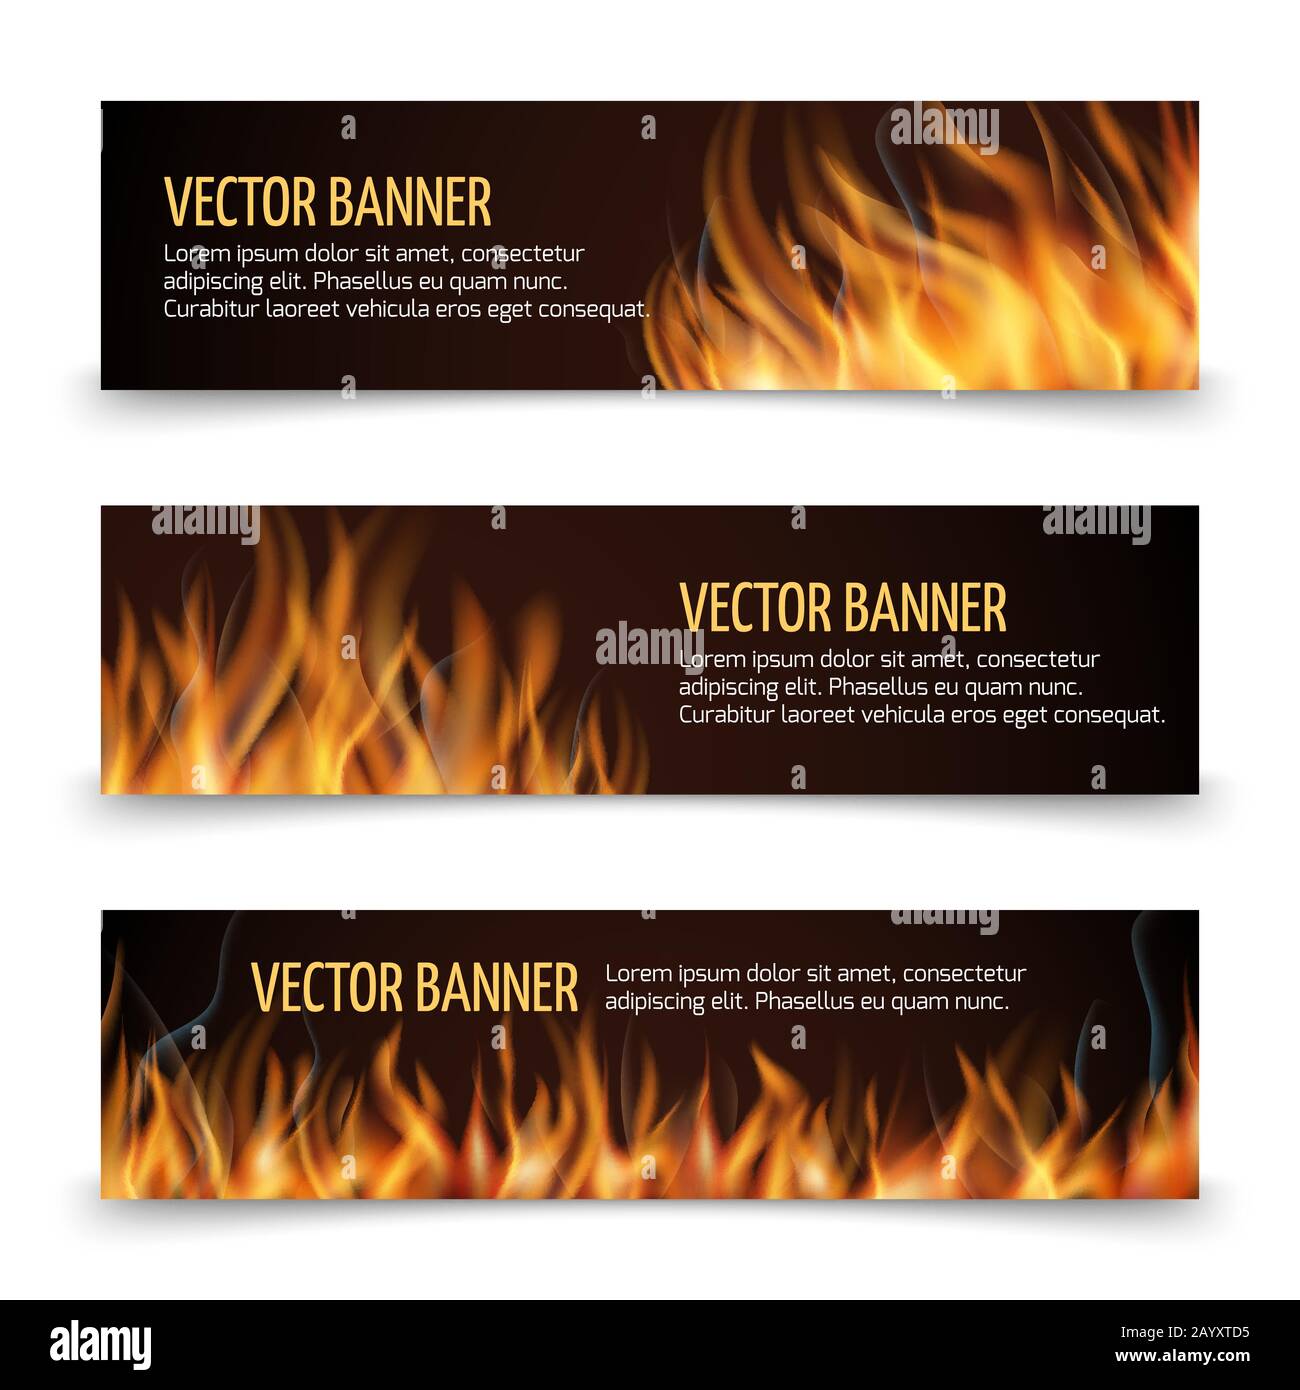 Horizontales Banner für Heißfeuer-Werbung mit Vektor. Banner mit Flamme und Feuer, Werbebanner Fiery Heat Illustration Stock Vektor